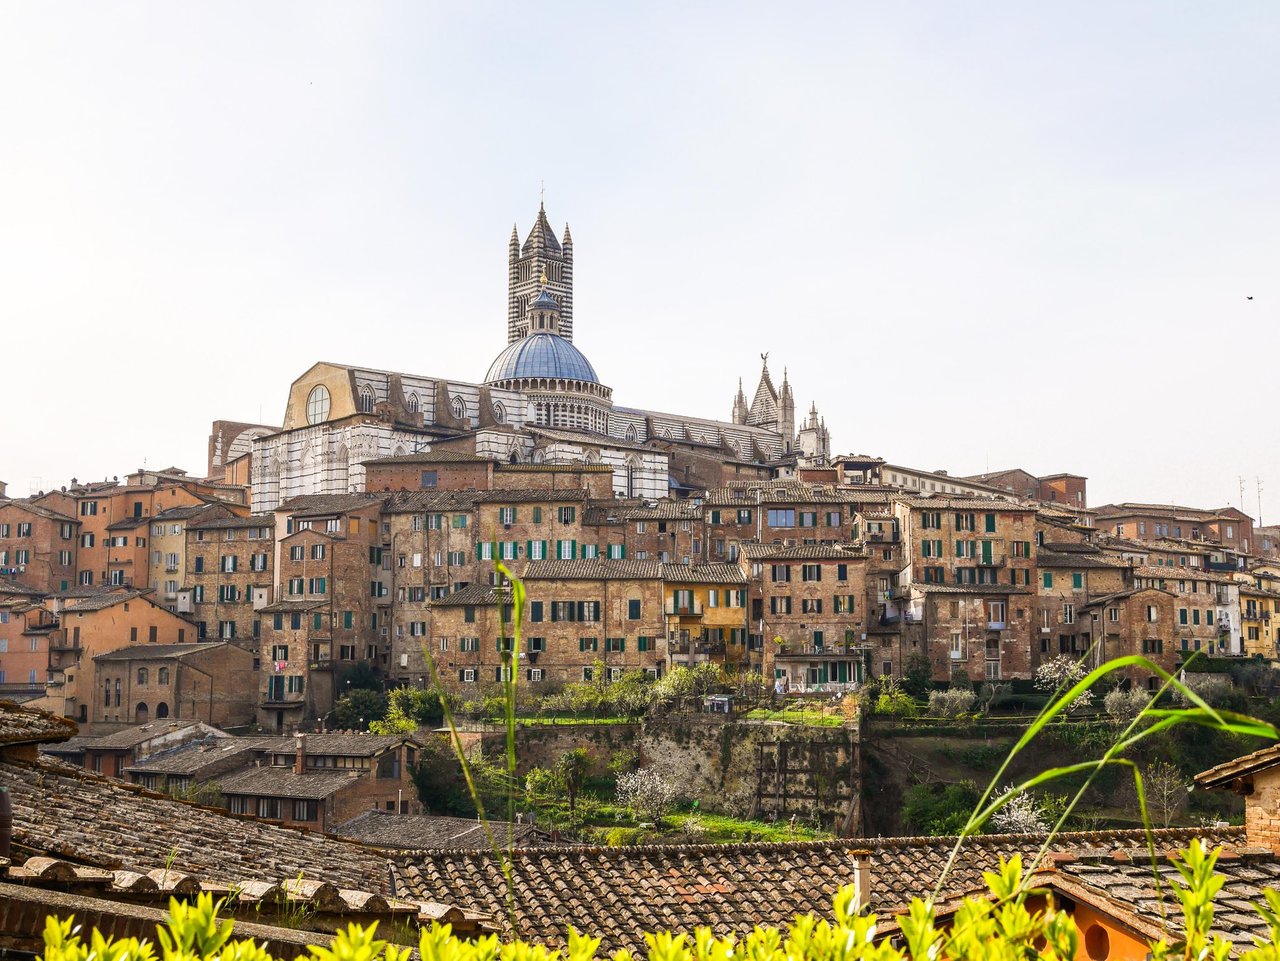 Siena Walking Tours: A Must-Do in Tuscany http://bit.ly/2pgtVrA #tuscany https://t.co/cJIXdrAM3Z